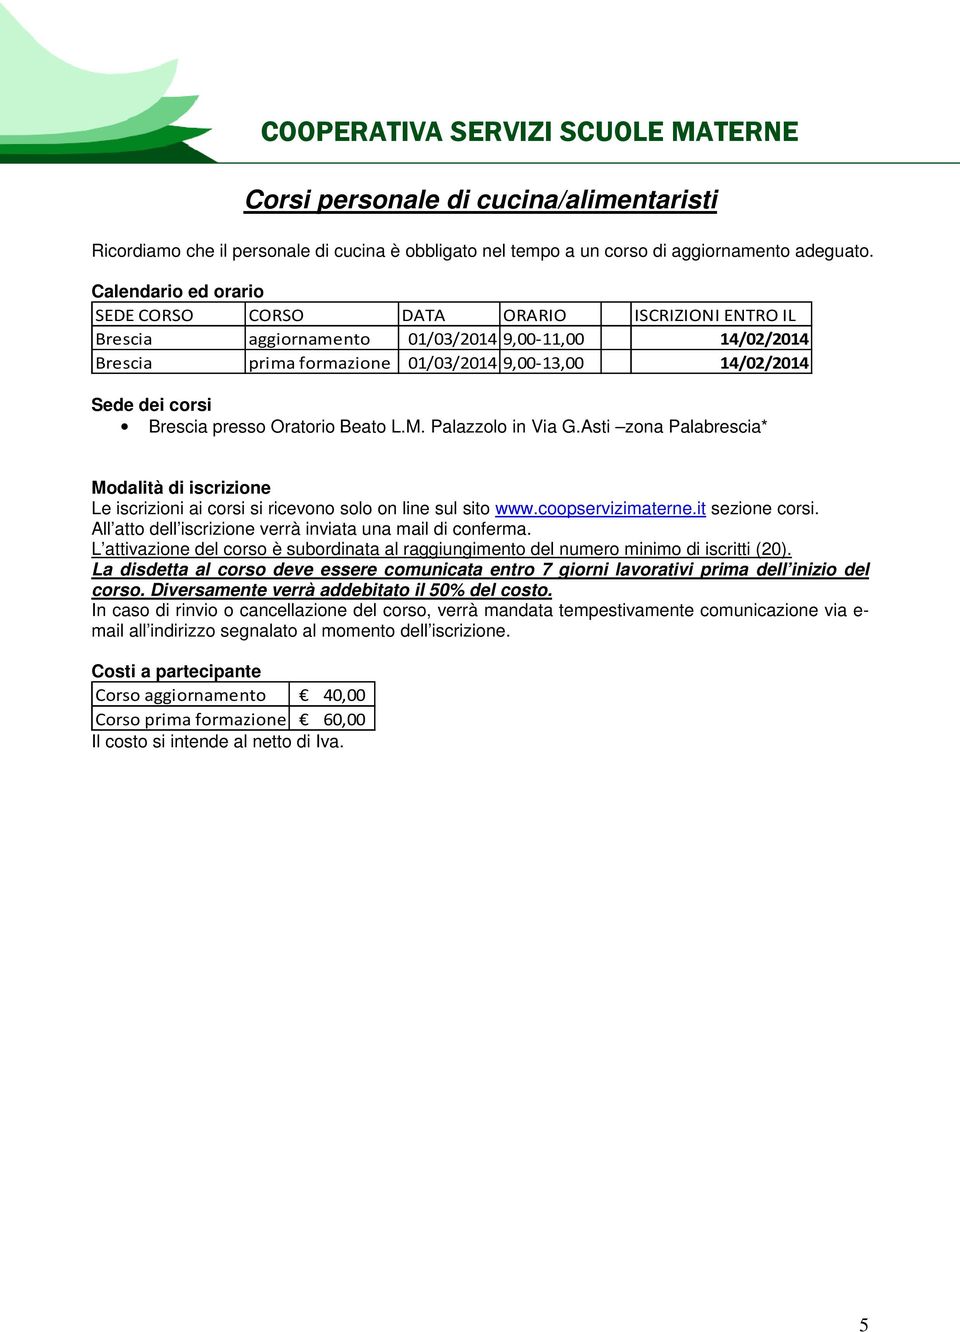 Calendario ed orario SEDE CORSO CORSO DATA ORARIO ISCRIZIONI ENTRO IL Brescia aggiornamento 01/03/2014 9,00-11,00 14/02/2014